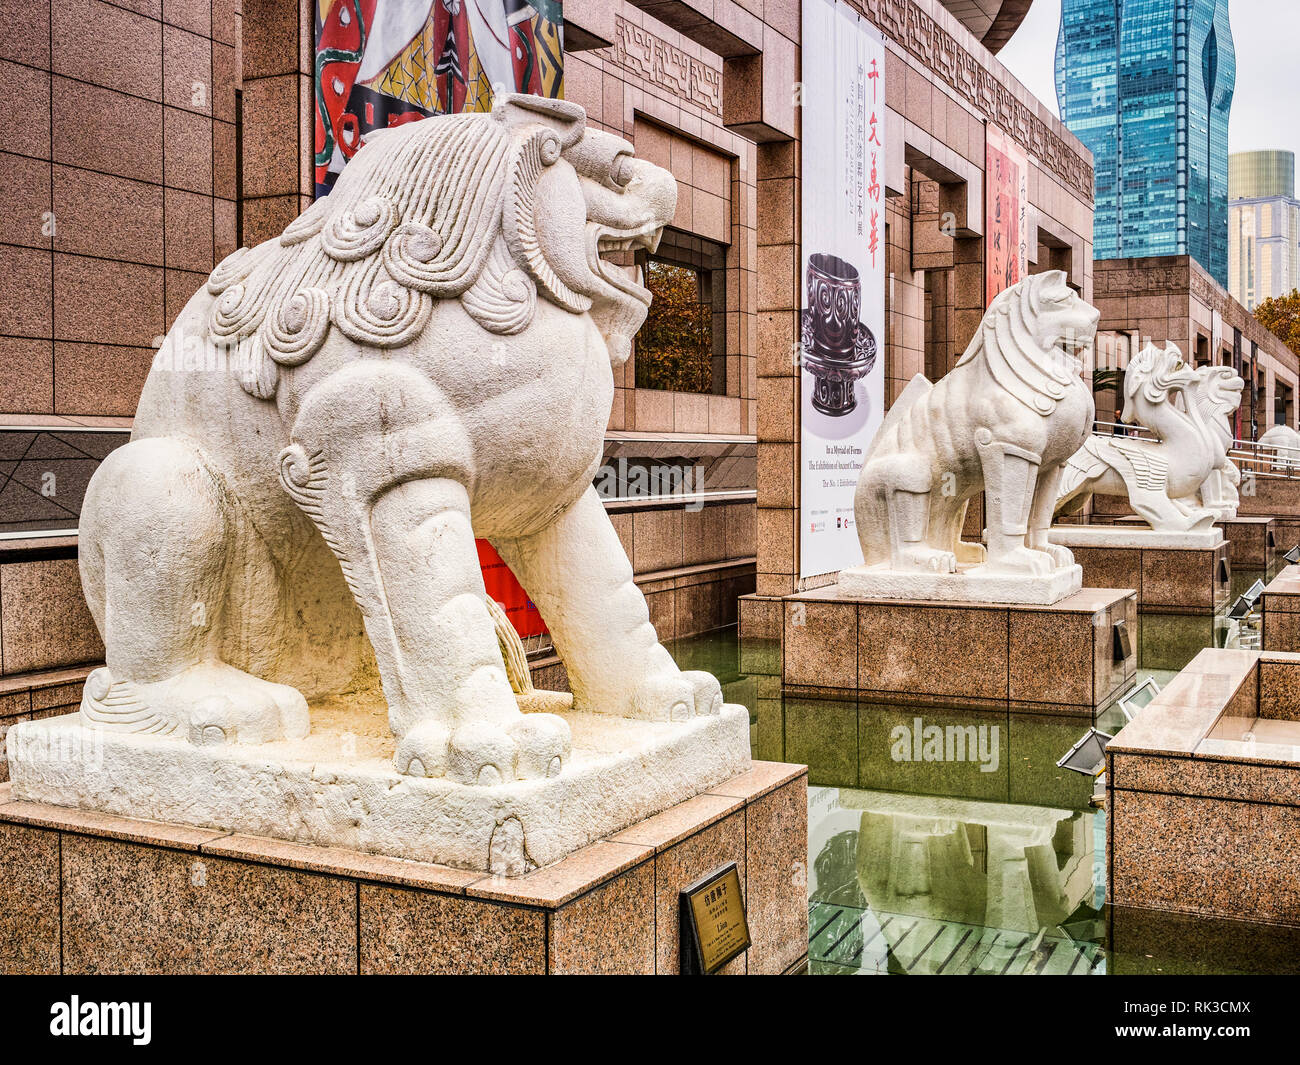 2 décembre 2018 : Shanghai, Chine - Sculptures sur l'animal mythique et légendaire à l'extérieur de l'entrée principale du musée de Shanghai. Banque D'Images